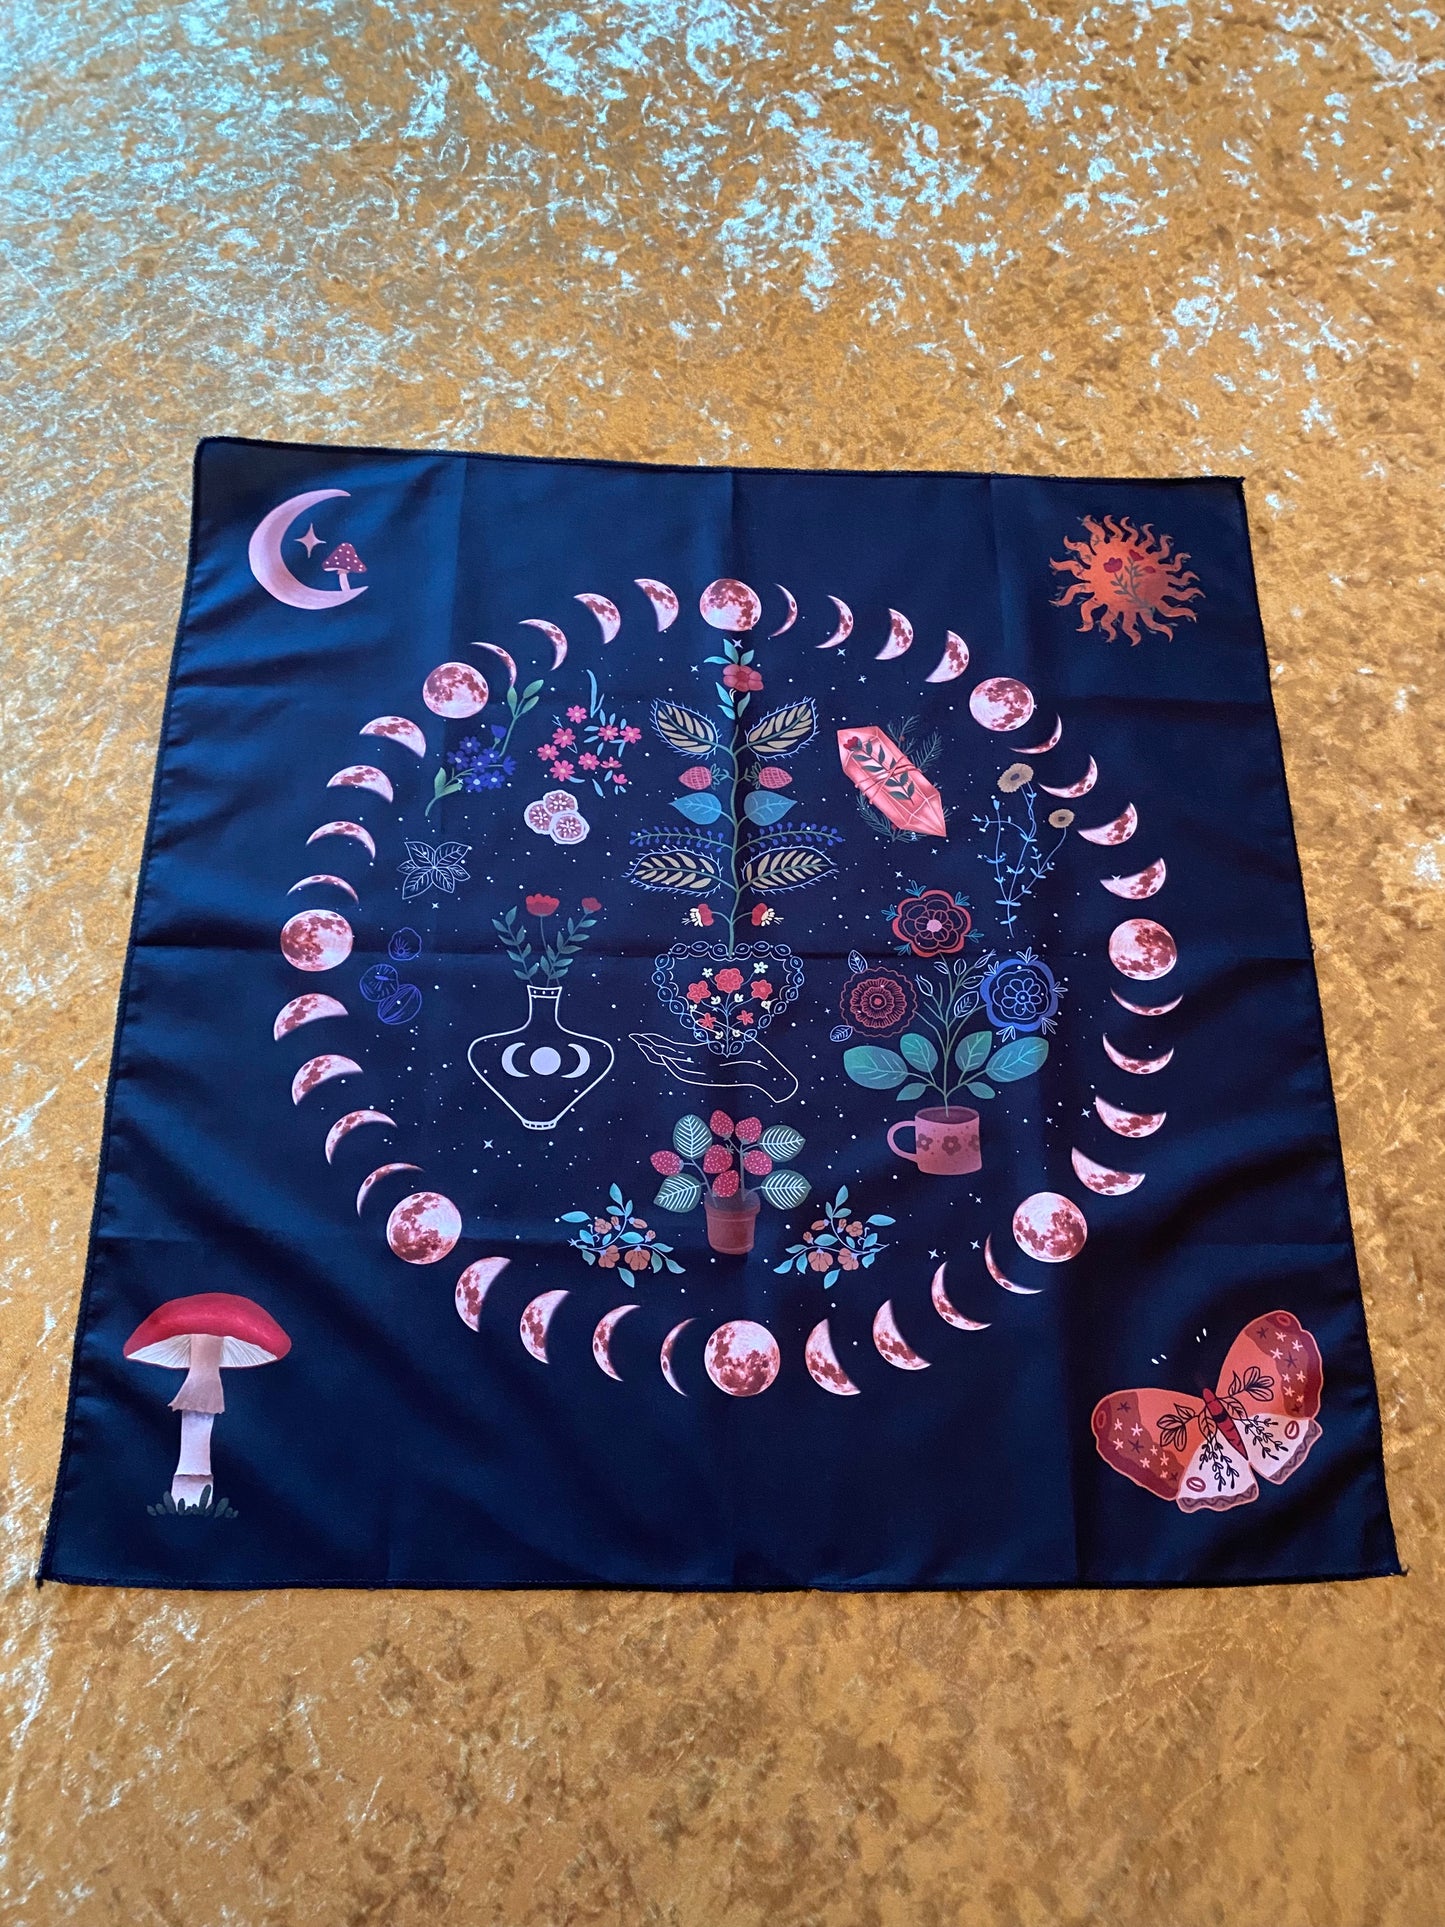 Moon Phase Tarot Cloth